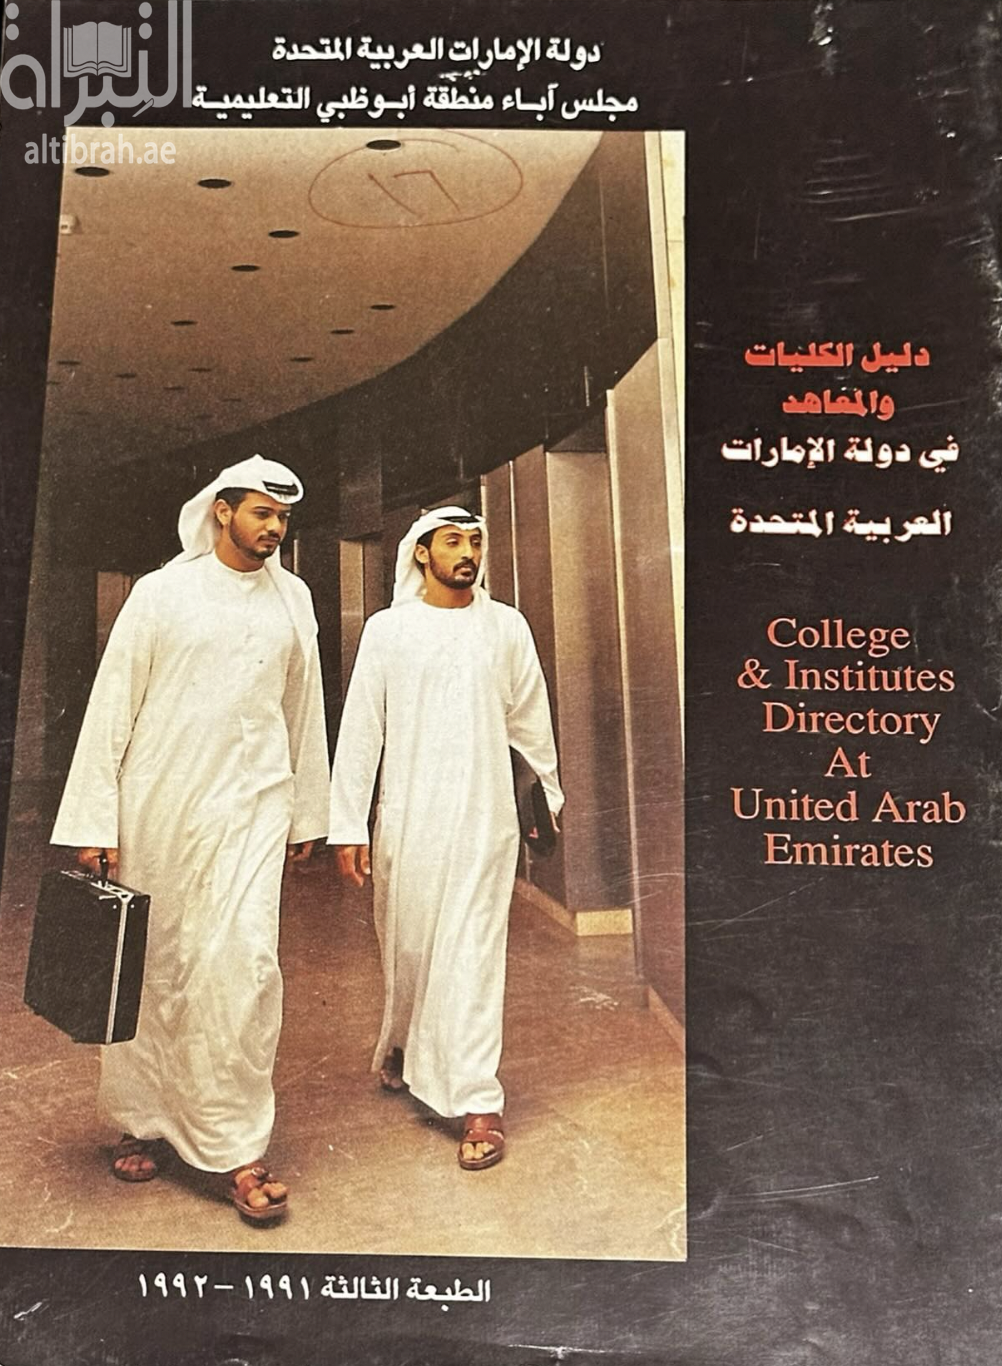 كتاب دليل الكليات و المعاهد في دولة الإمارات العربية المتحدة College & Institutes directory at United Arab Emirates